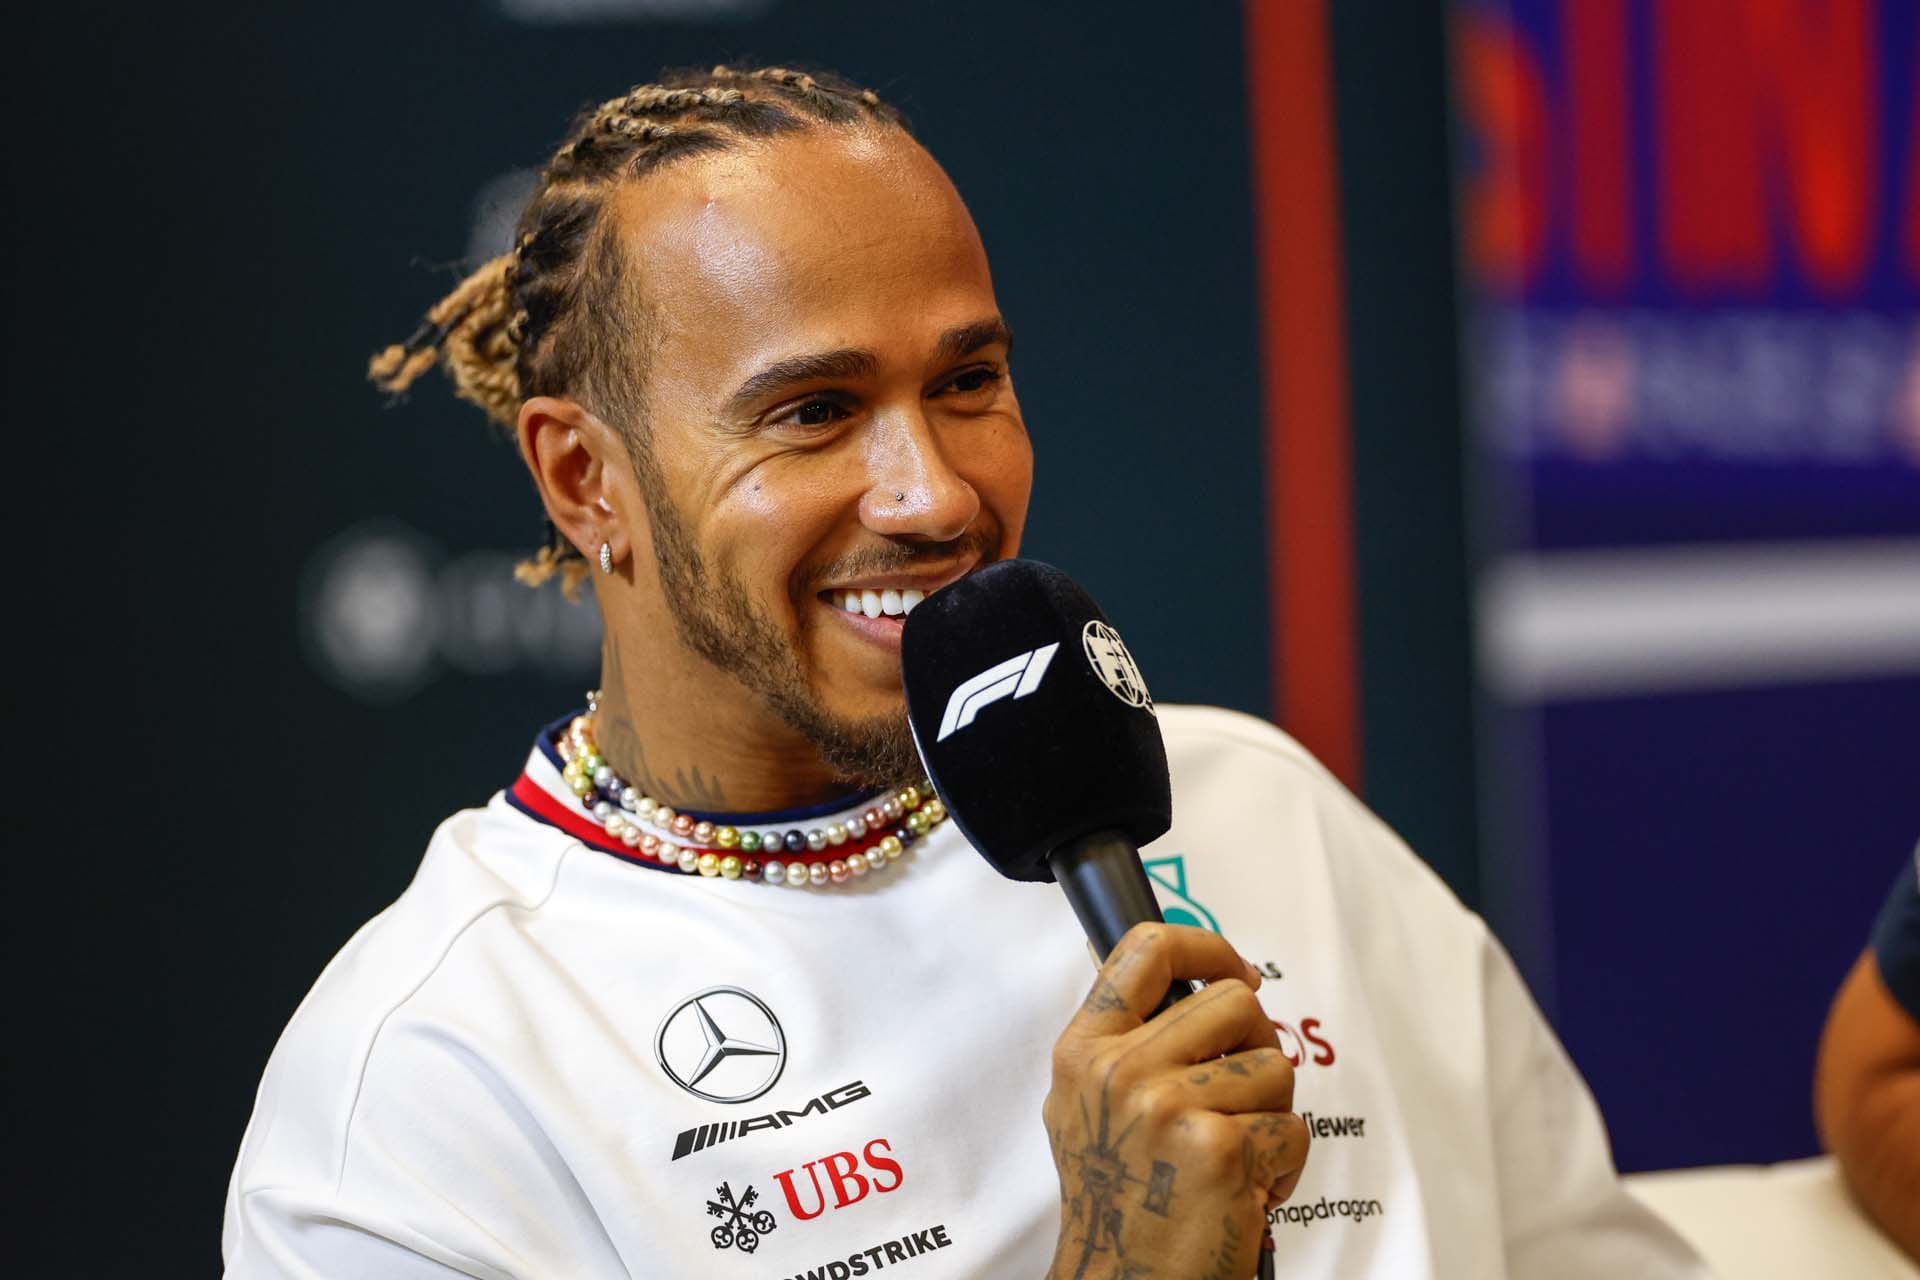 Verstappen apjának beleszólása aggodalomra ad okot a Red Bullnál – Hamilton aggódik a helyzet miatt